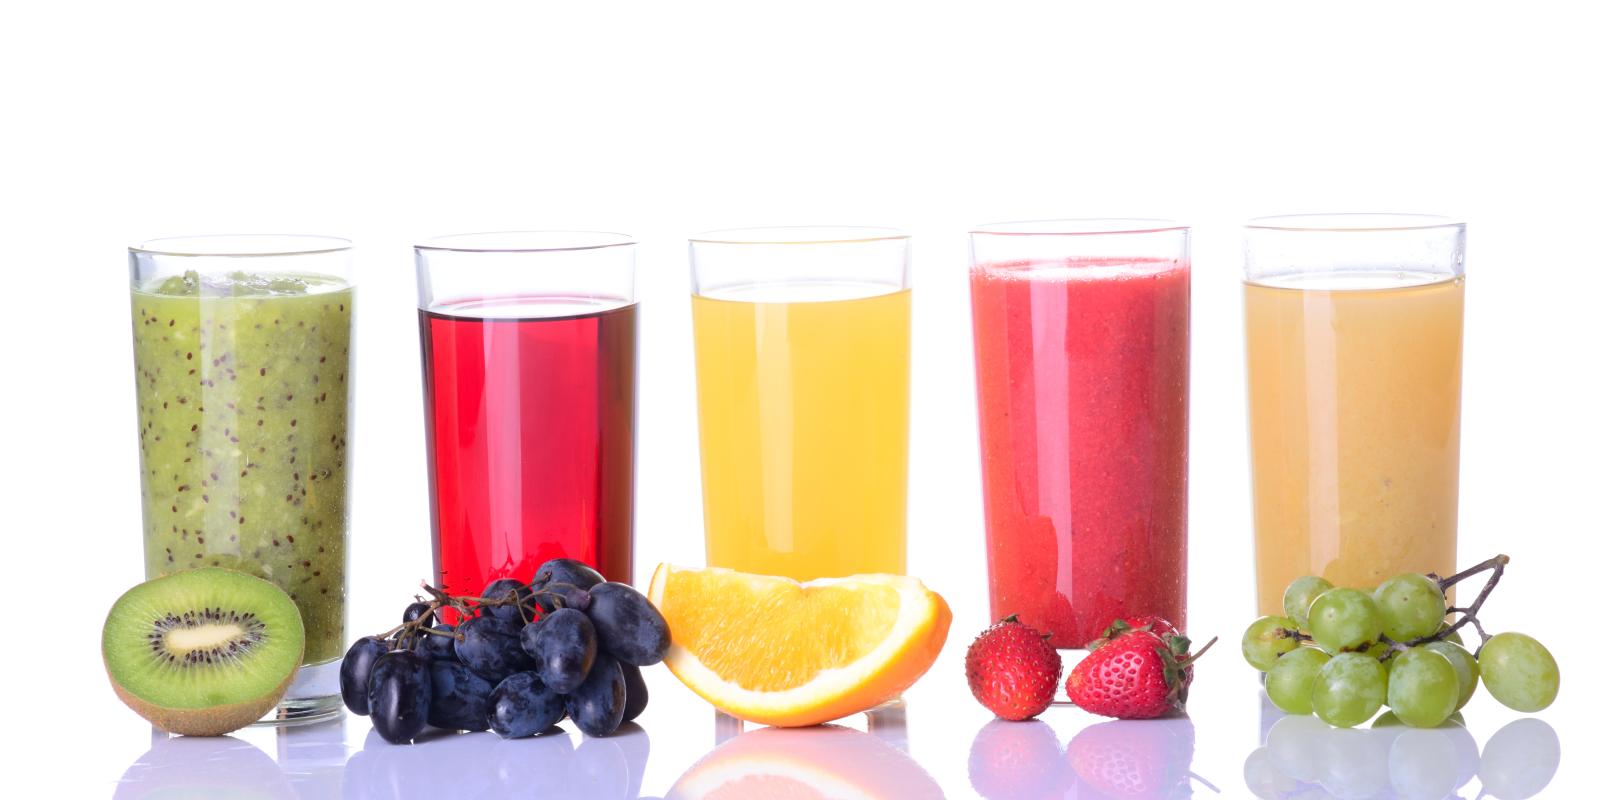 Bilde av fem glass med jus og frukt: Fra venstre kiwi, blå druer, appelsin, jordbær og grønne druer.